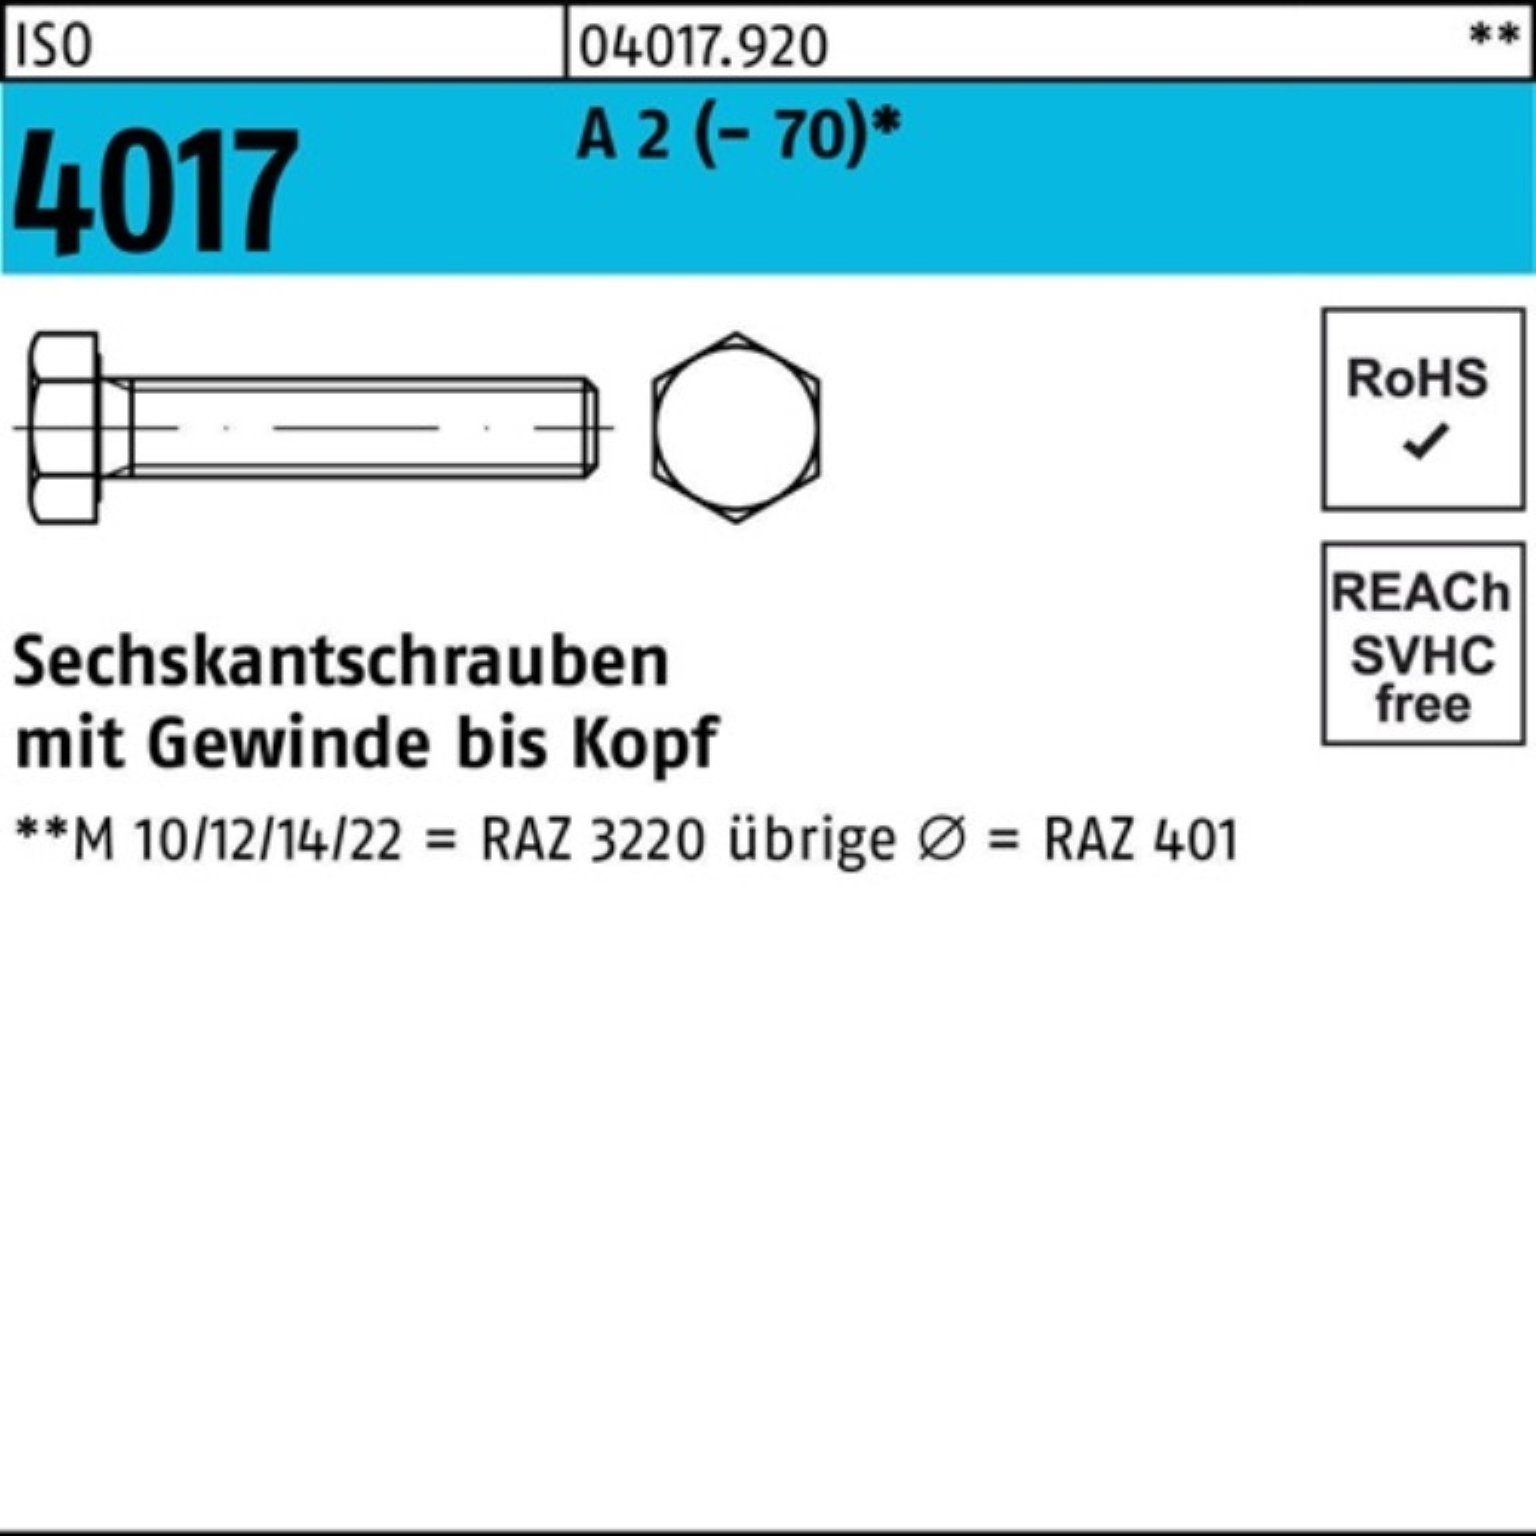 Bufab Sechskantschraube 200er Pack Sechskantschraube ISO 4017 VG M5x 22 A 2 (70) 200 Stück